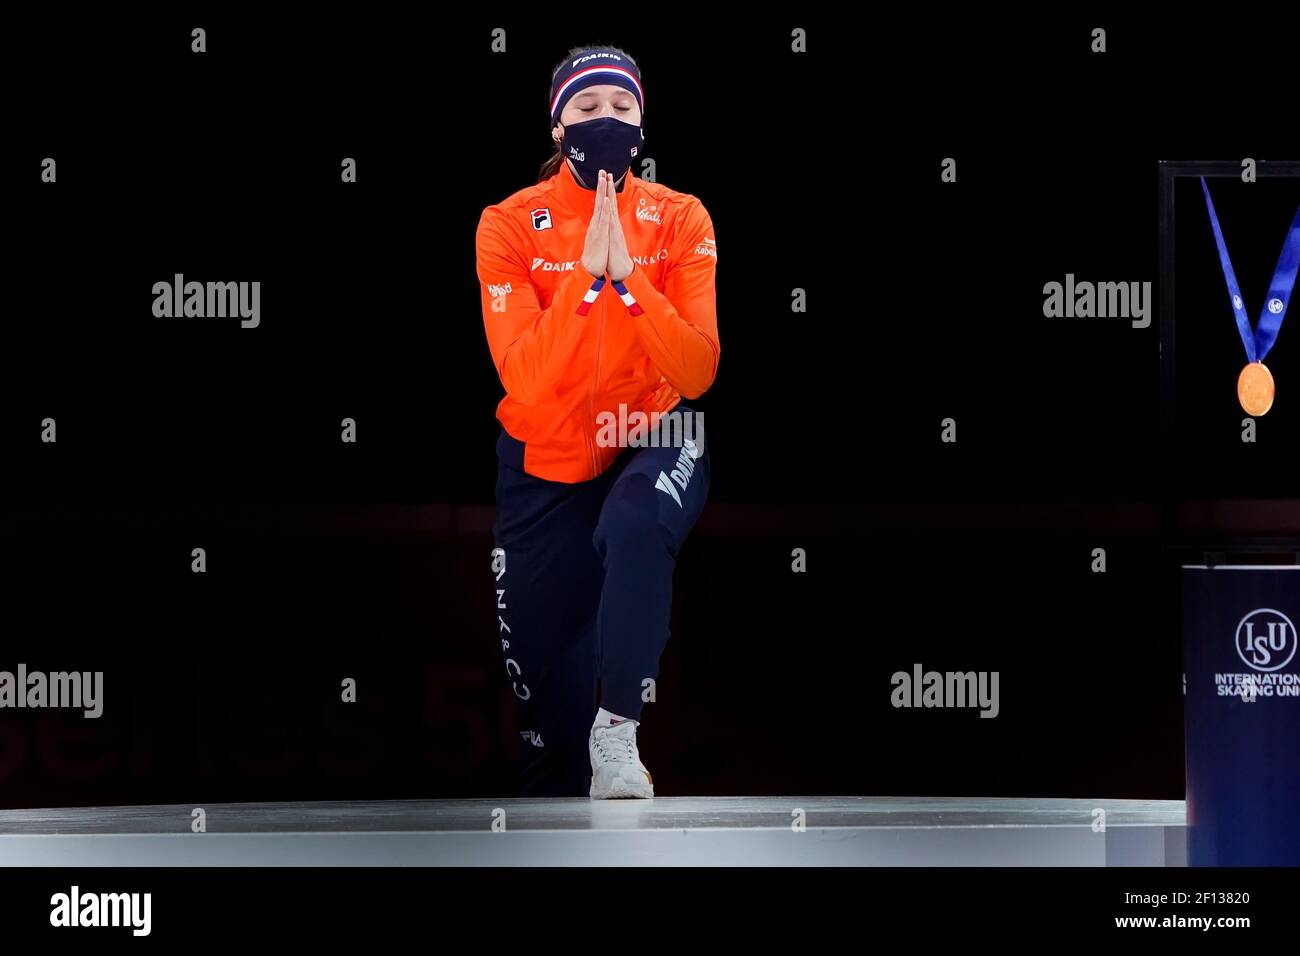 Suzanne Schulting während der ISU-Weltmeisterschaft Short Track 2021 am 6 2021. März in Dordrecht Niederlande Credit: SCS/Sander Chamid/AFLO/Alamy Live News Stockfoto